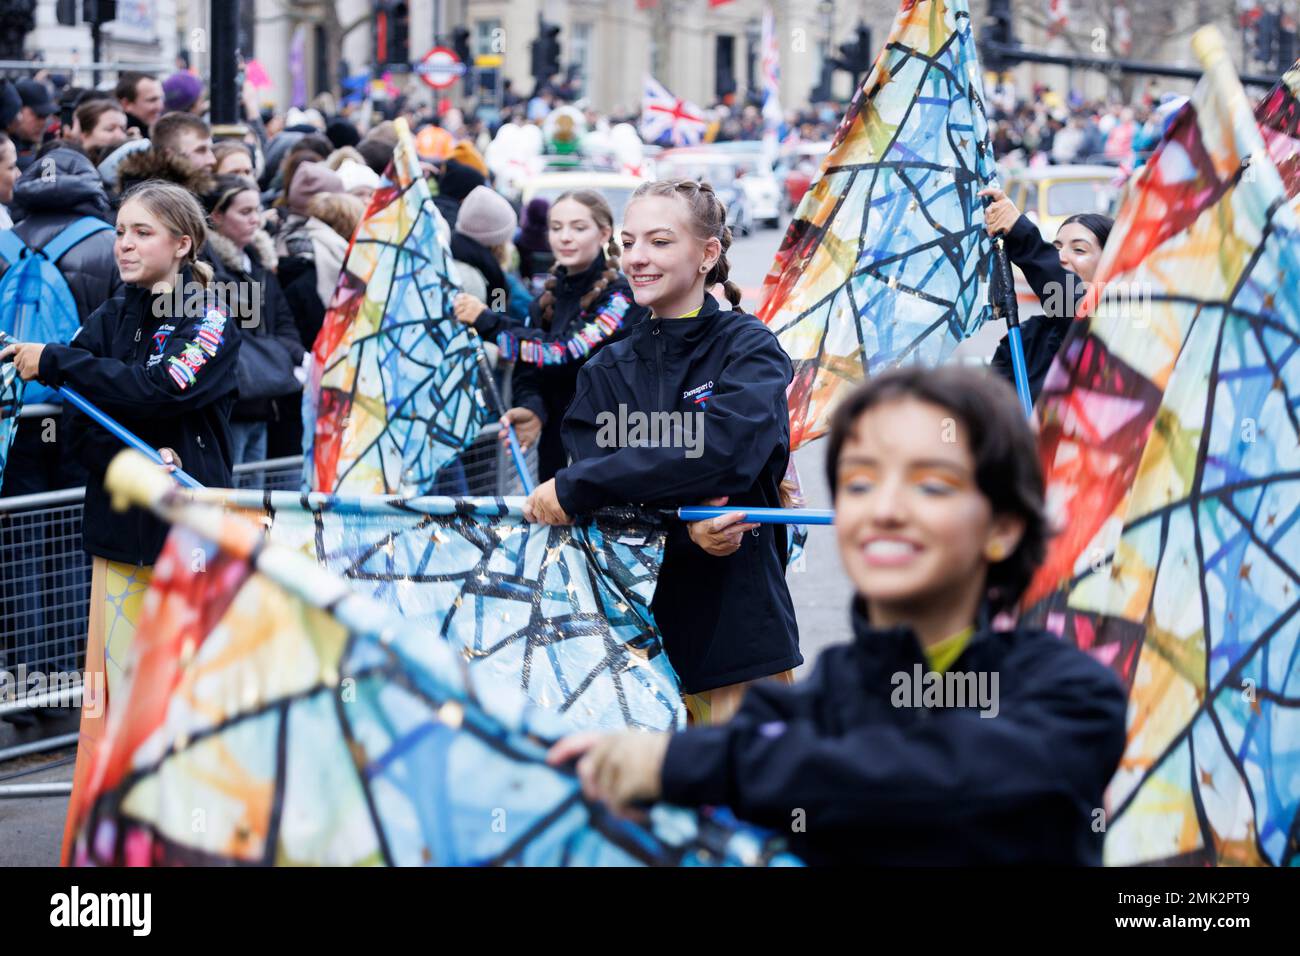 La parade du jour de l’an a lieu dans tout le centre de Londres pour célébrer la nouvelle année 2023. Photo prise le 1st Jan 2023. © Belinda Jiao jiao.bili Banque D'Images